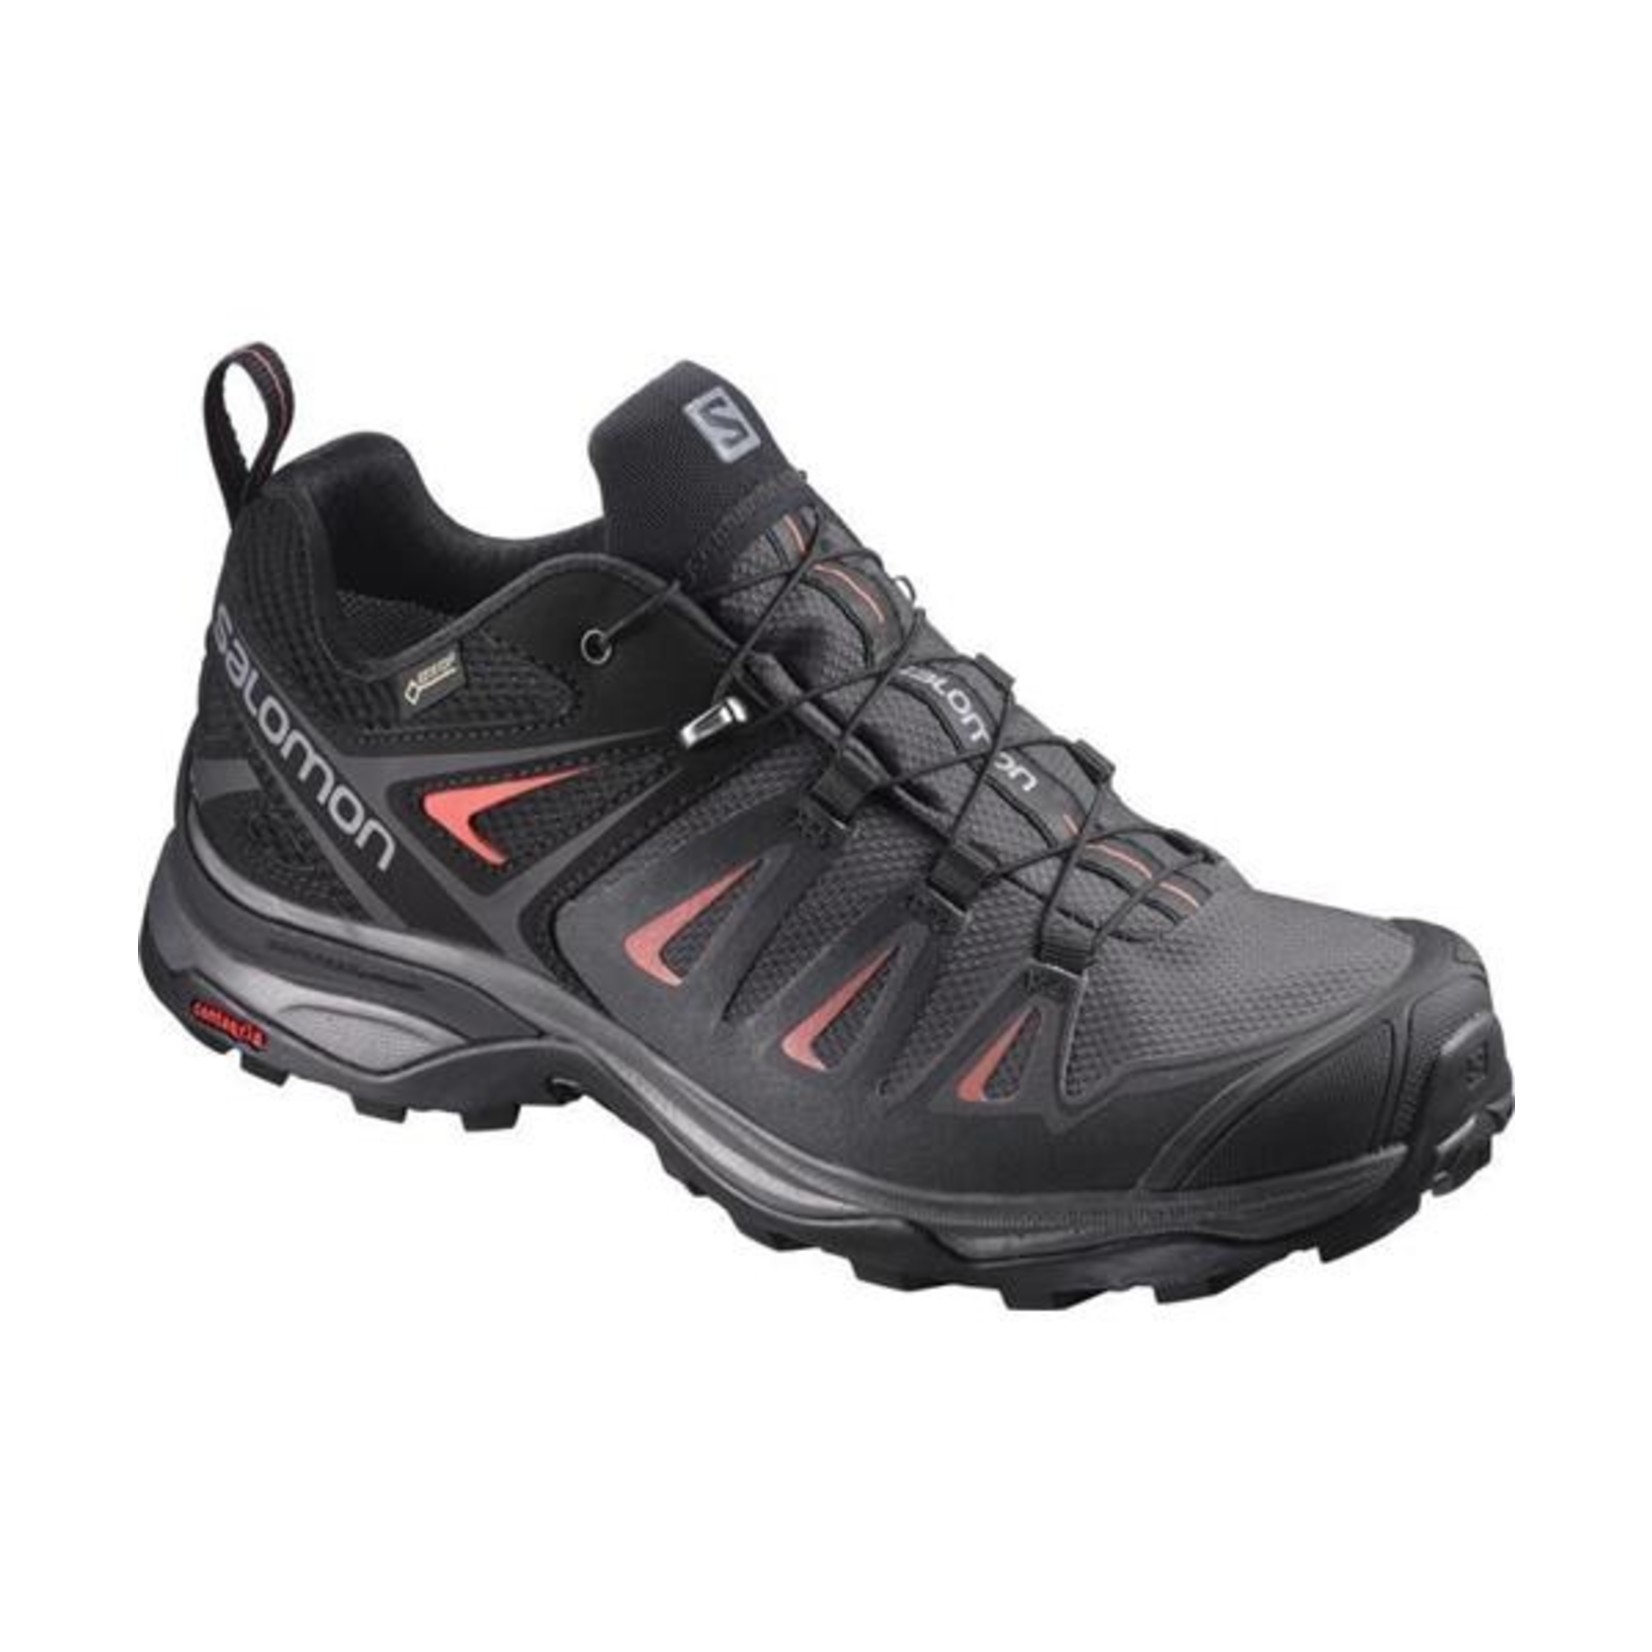 Salomon X Ultra 3 GTX Women's Hiking Shoe